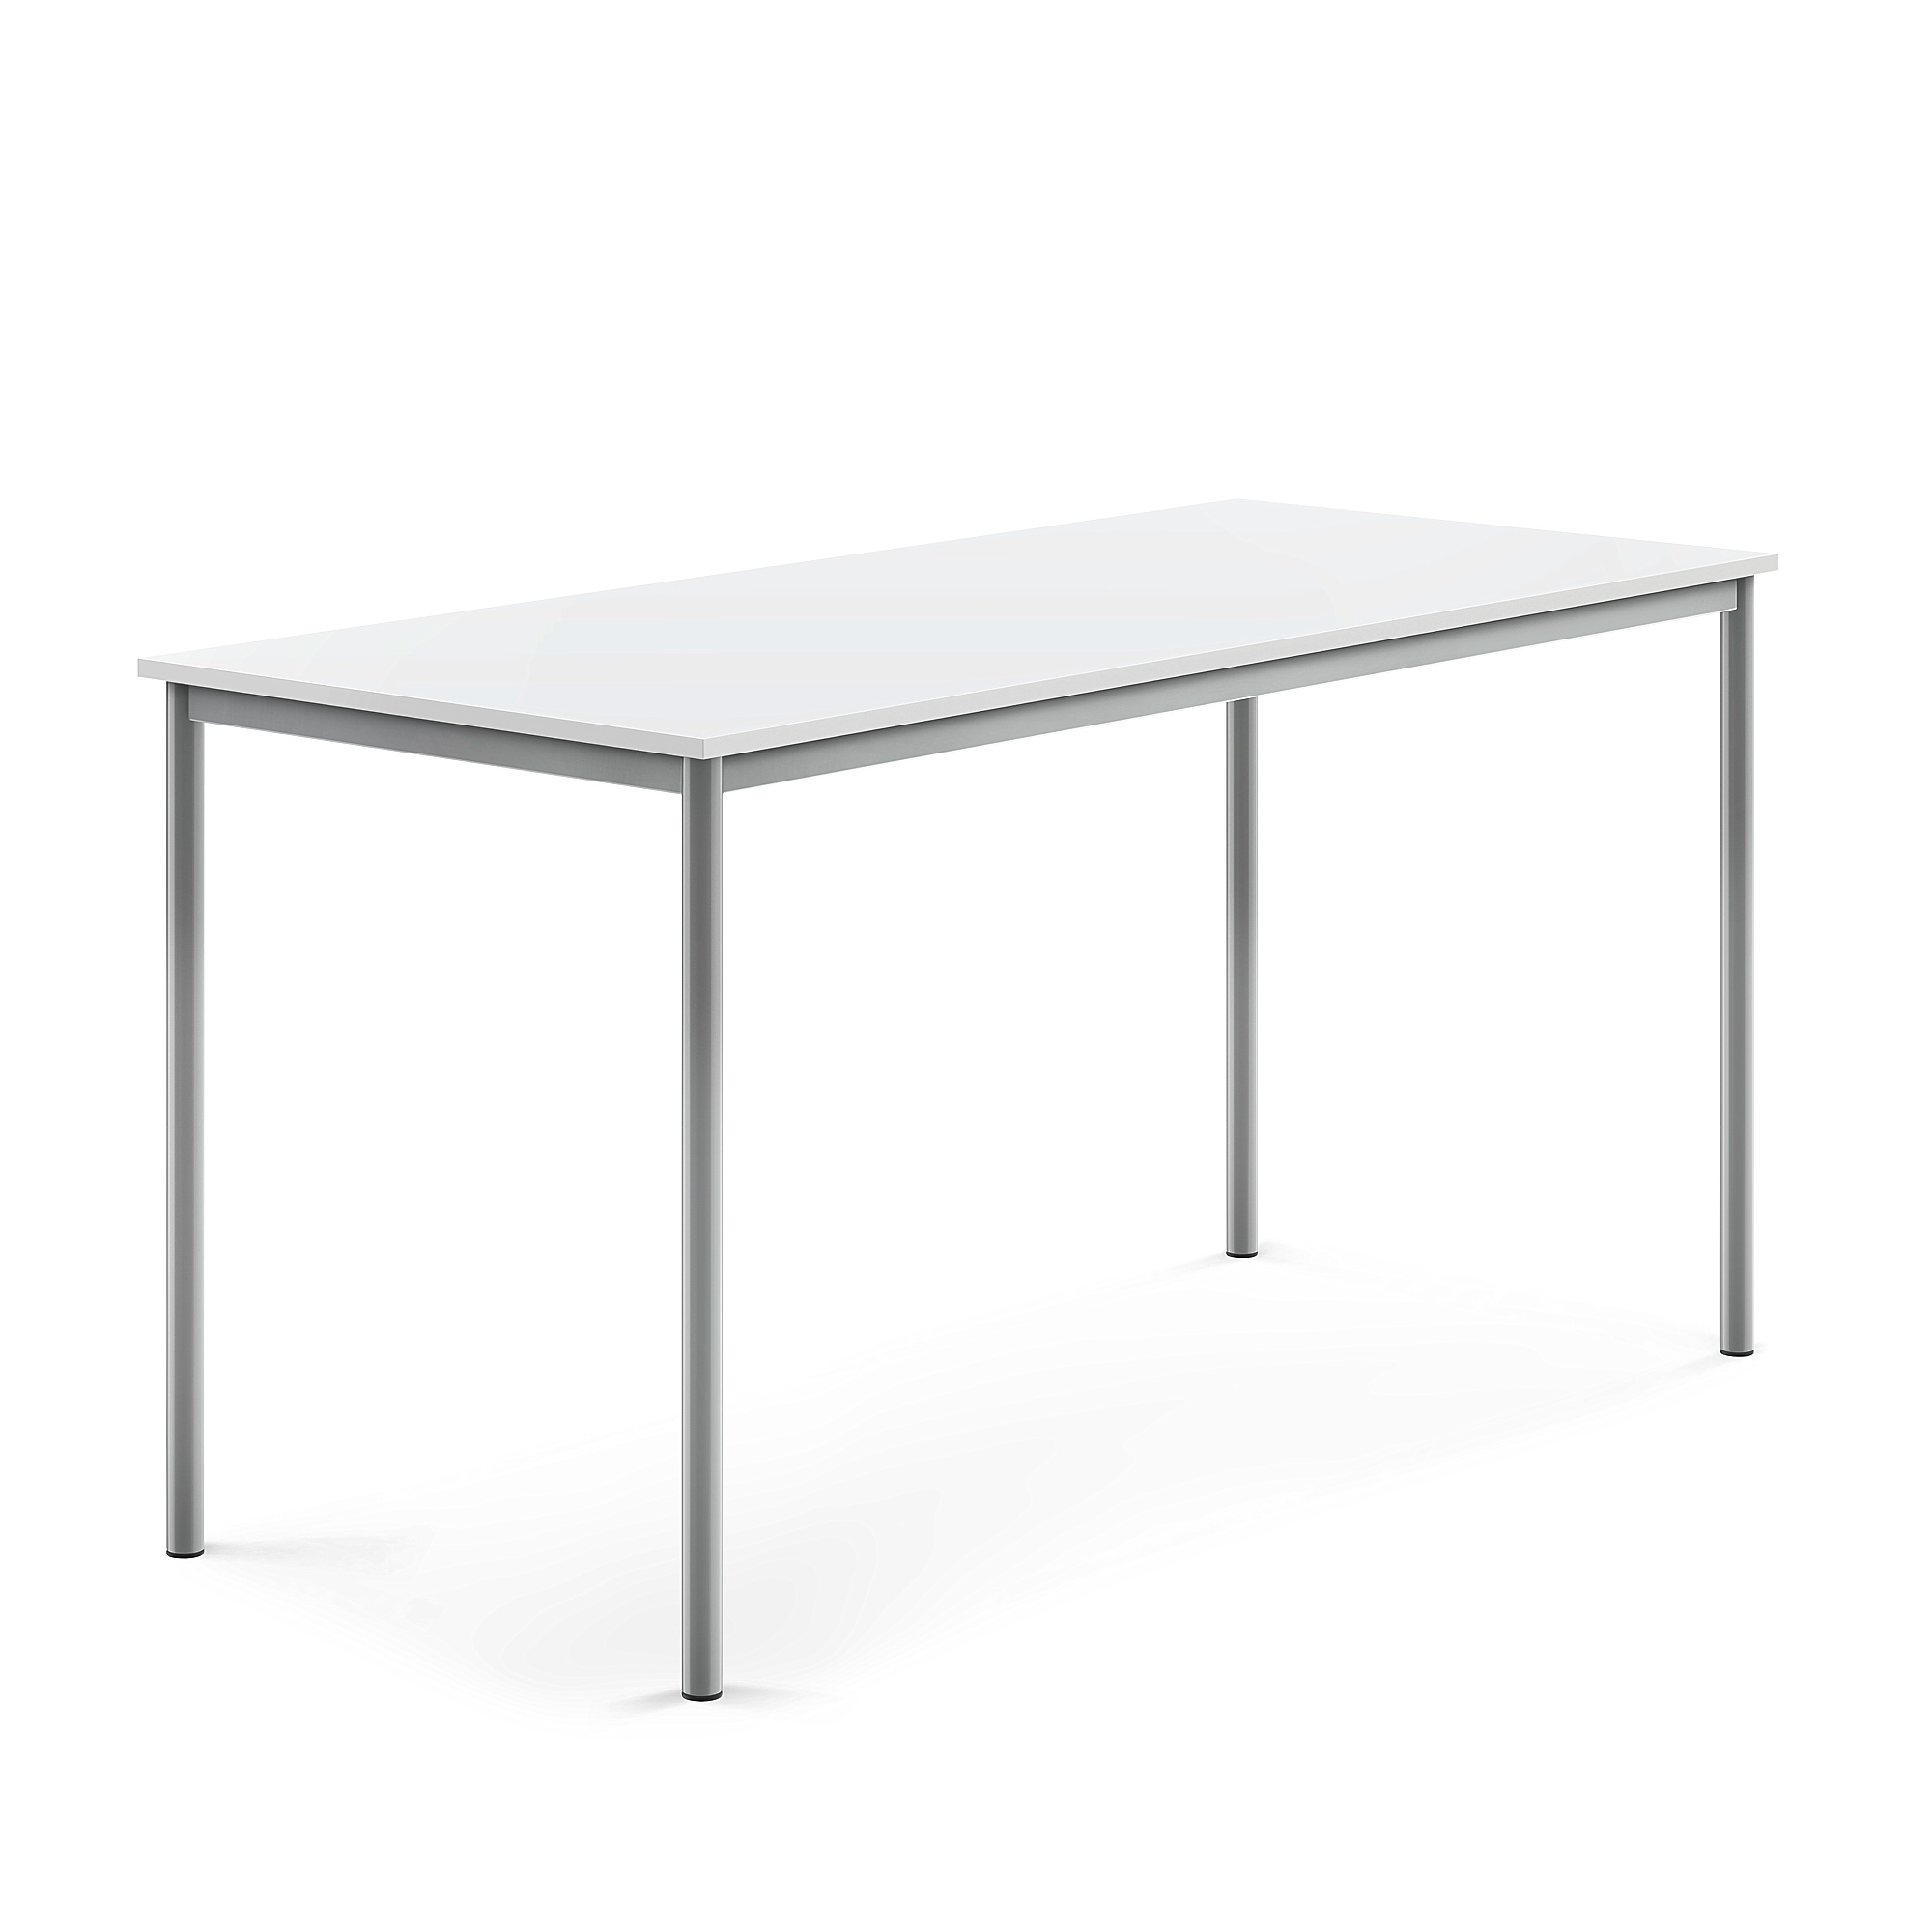 Stůl BORÅS, 1800x800x900 mm, stříbrné nohy, HPL deska, bílá